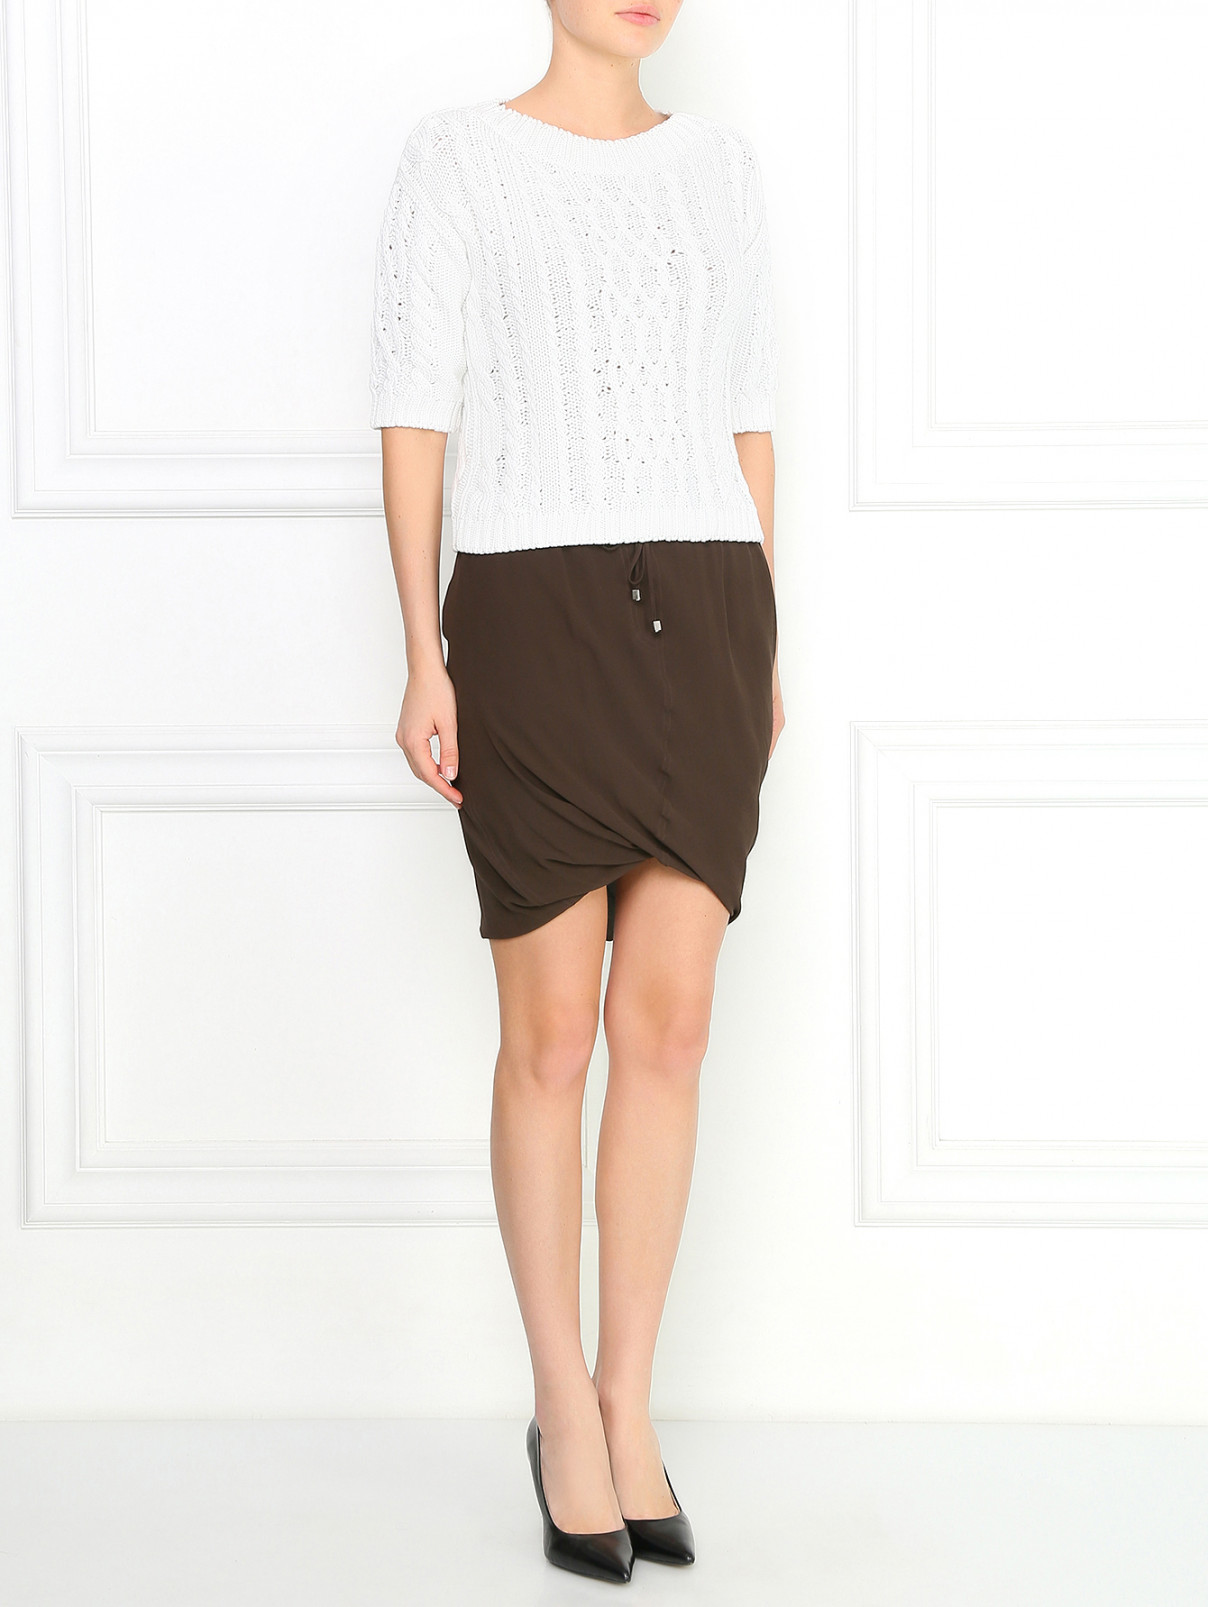 Шелковая юбка-миди на резинке Gianfranco Ferre  –  Модель Общий вид  – Цвет:  Коричневый